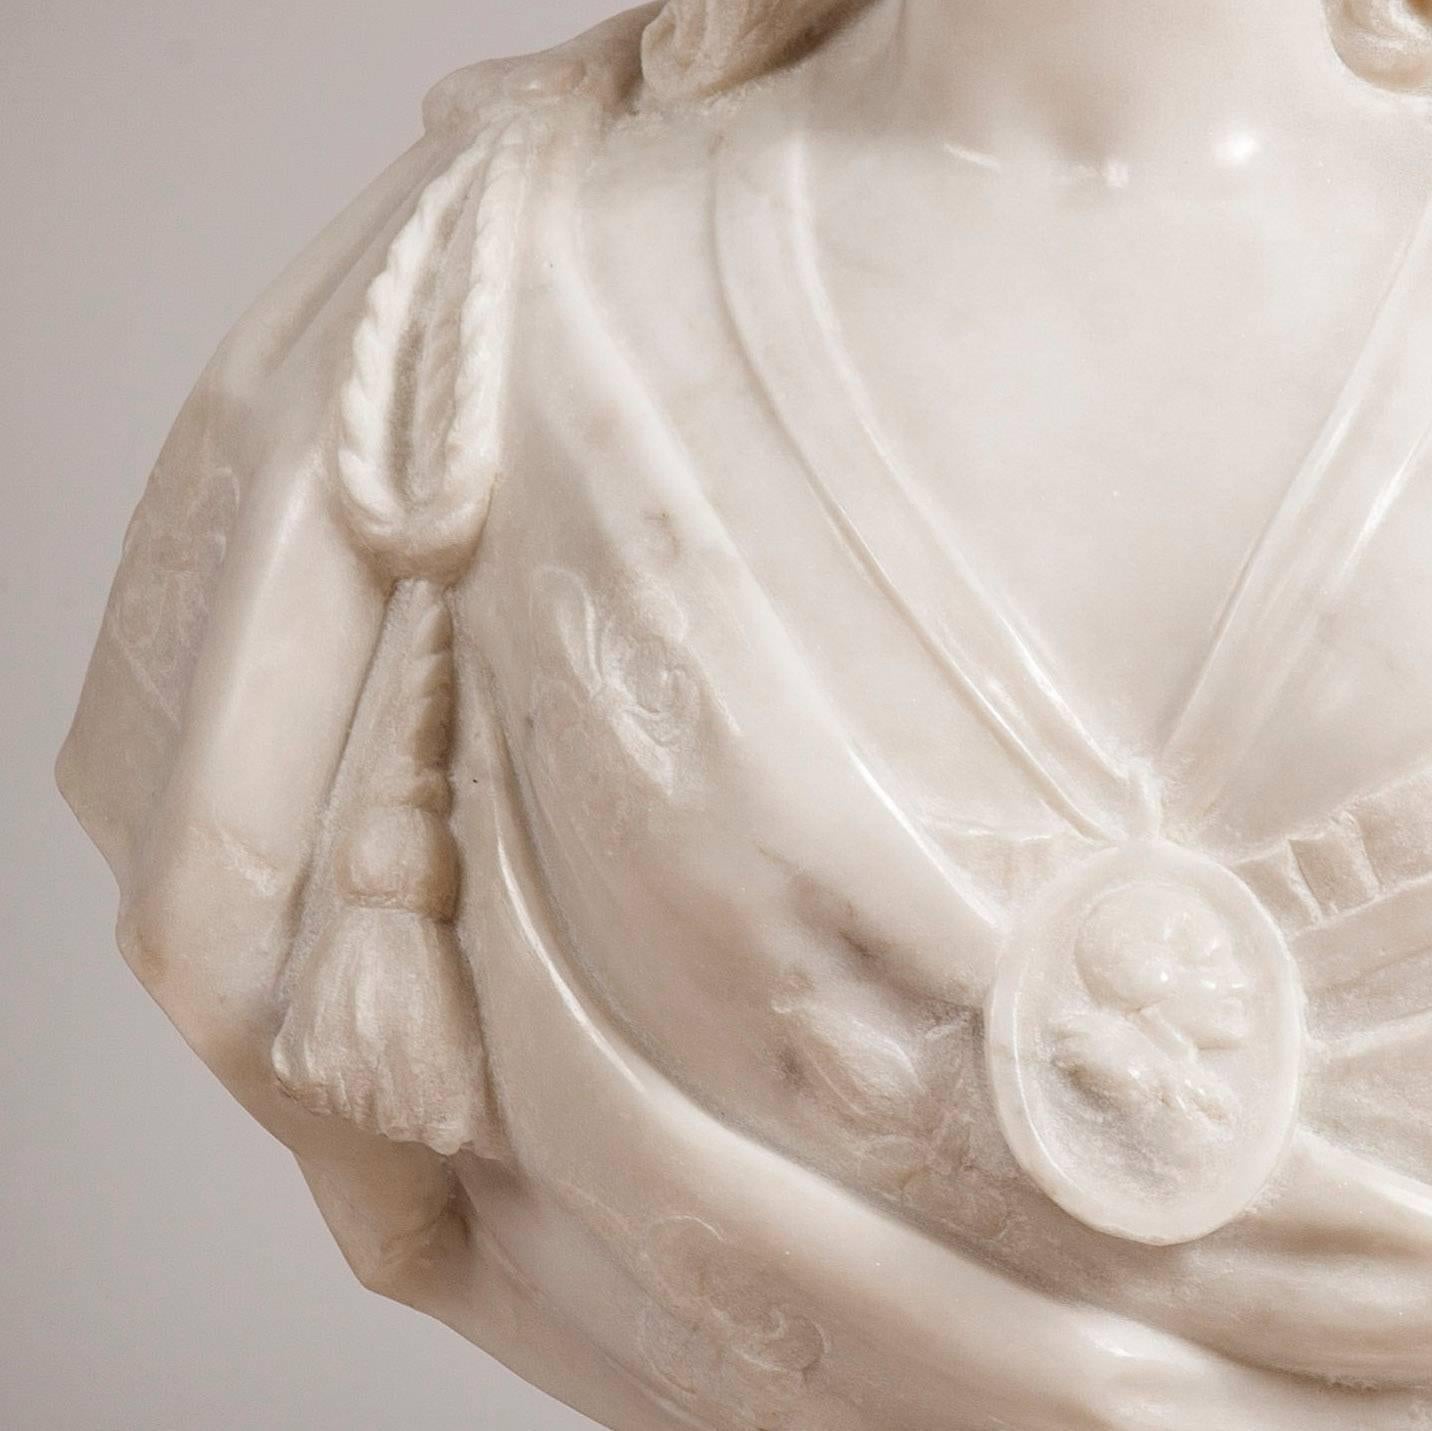 Büste 'Marie Antoinette' 
Nach dem Original von Felix Lecomte
 
Die aus Carrara-Marmor gefertigte Büste der Königin steht auf einer kannelierten Säule, die von einem quadratischen Sockel getragen wird. Sie wird als stolze Vertreterin ihres Amtes